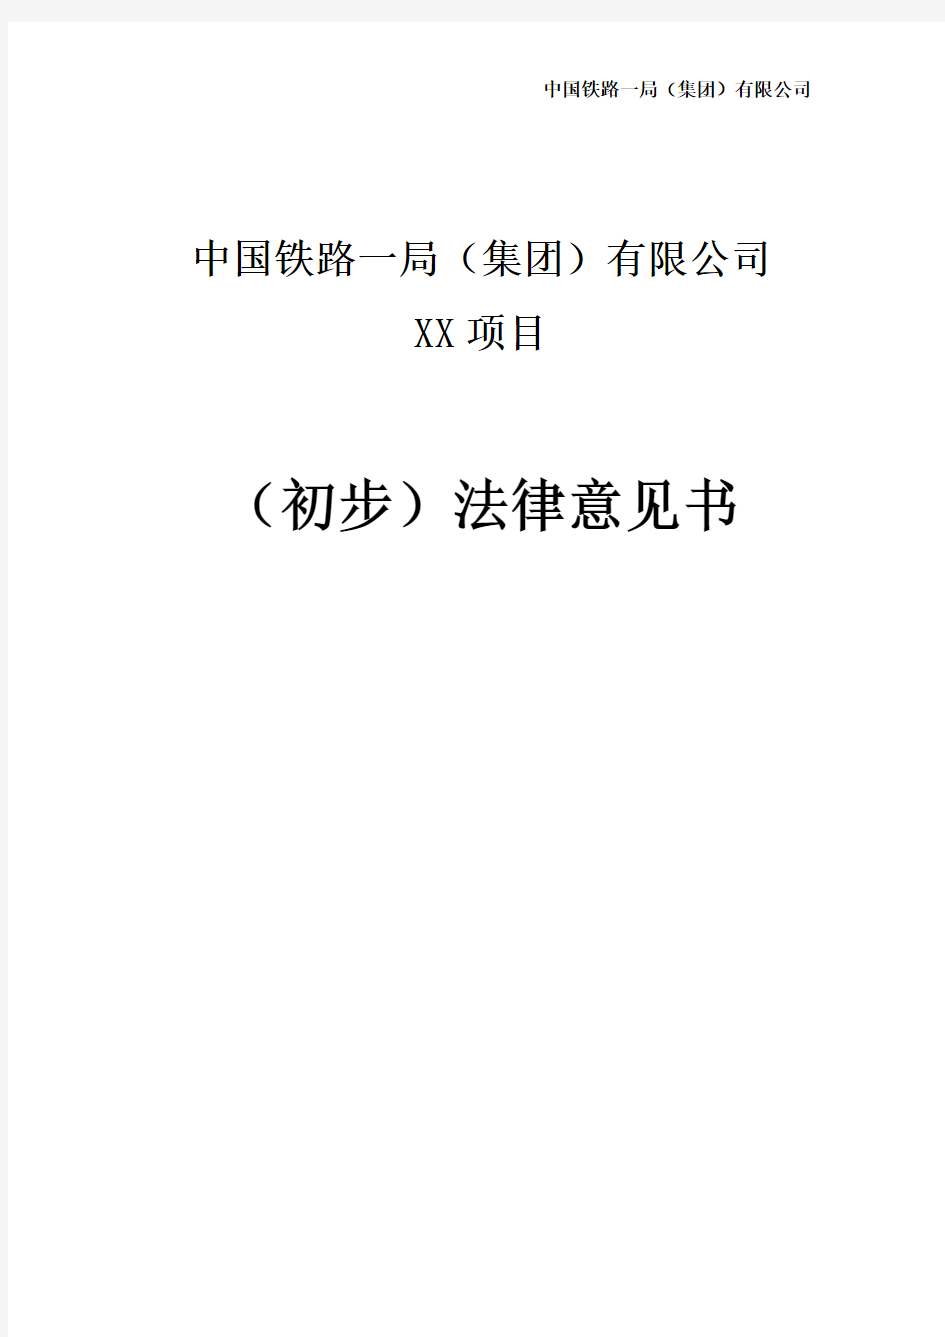 中国铁路一局(集团)有限公司XX项目(初步)法律意见书---副本